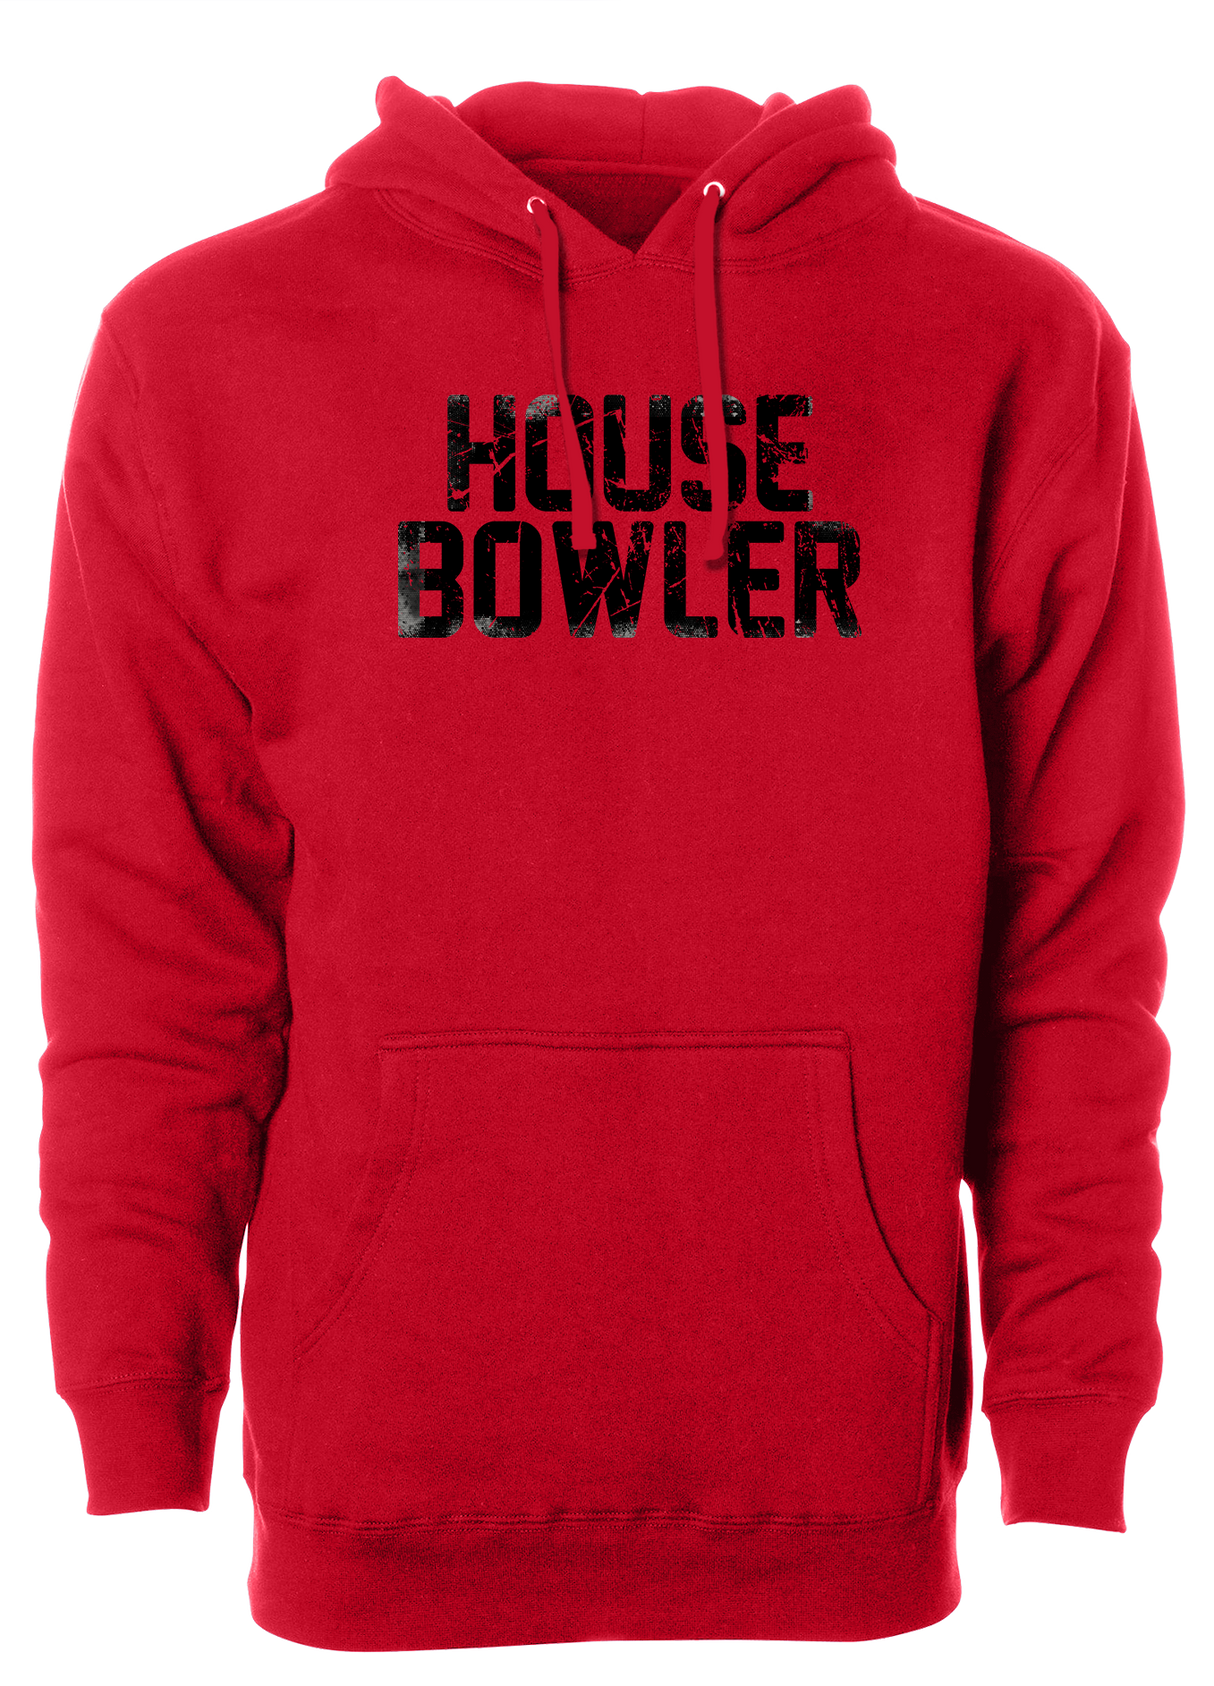 House Bowler Hoodie